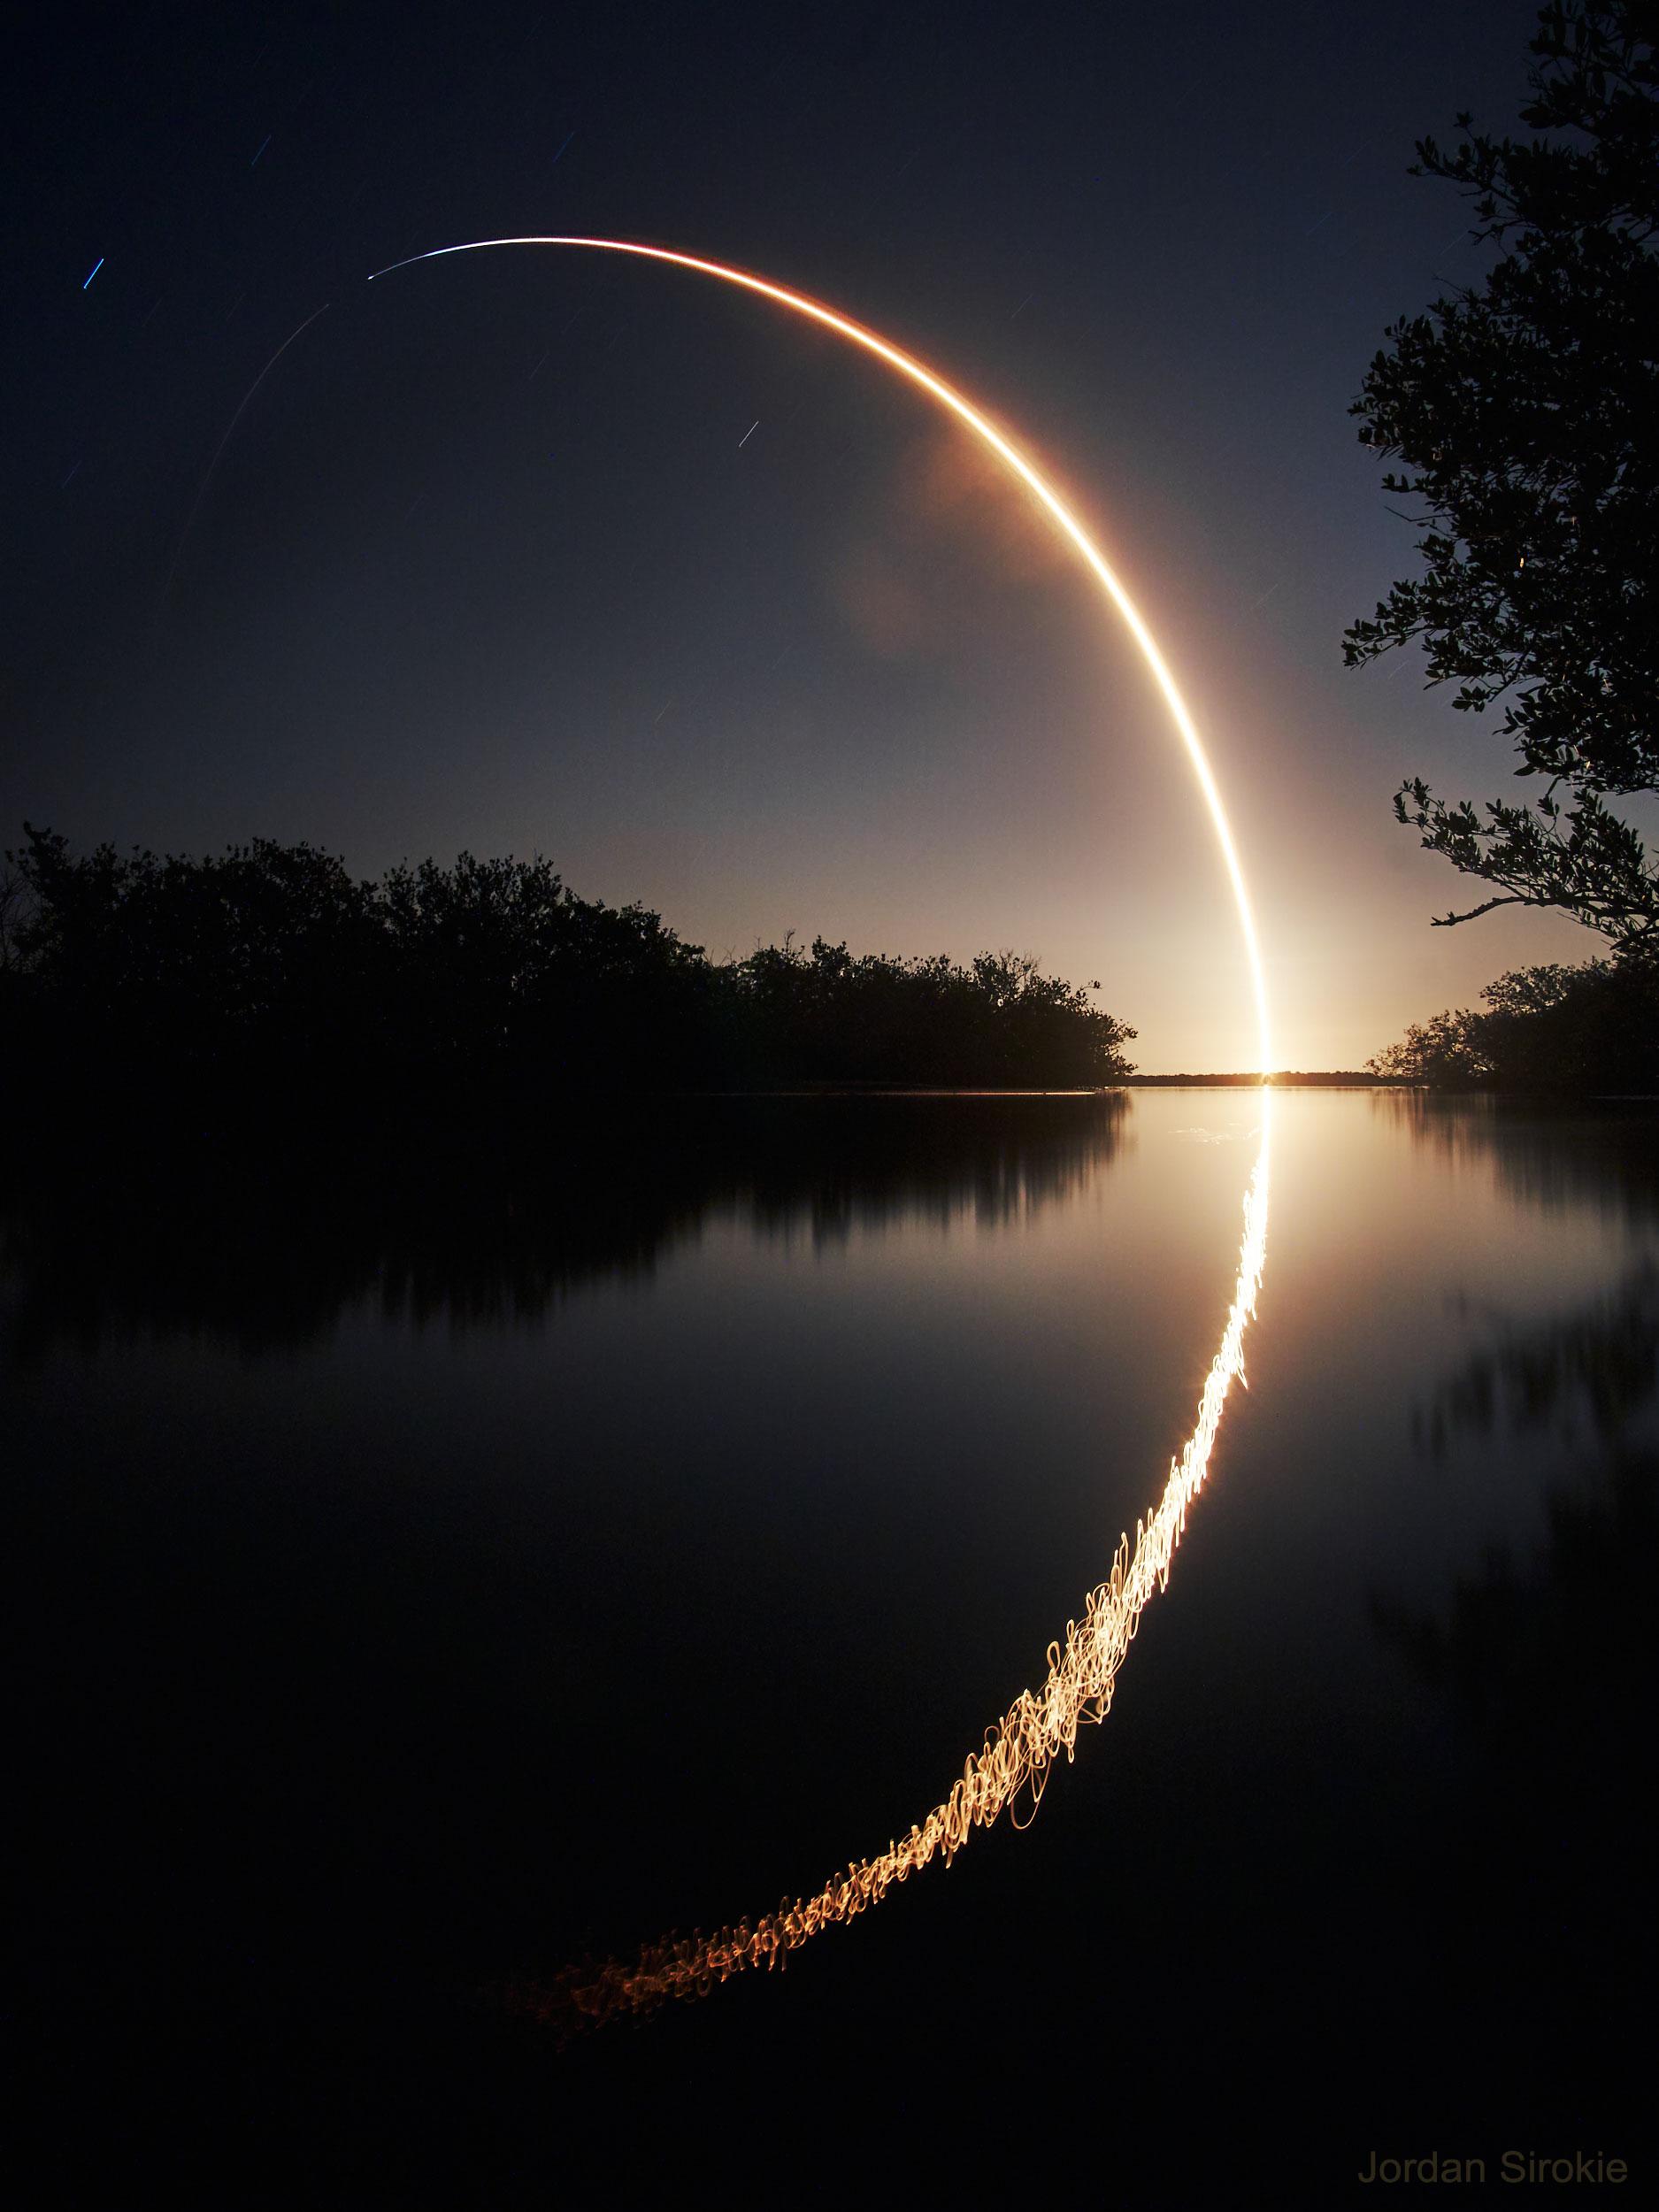 صورة طويلة التعريض تظهر مسار صاروخ منطلق من سطح الأرض راسماً فوس في السماء بينما ينعكس ذلك على صفحة مسطّح مائي